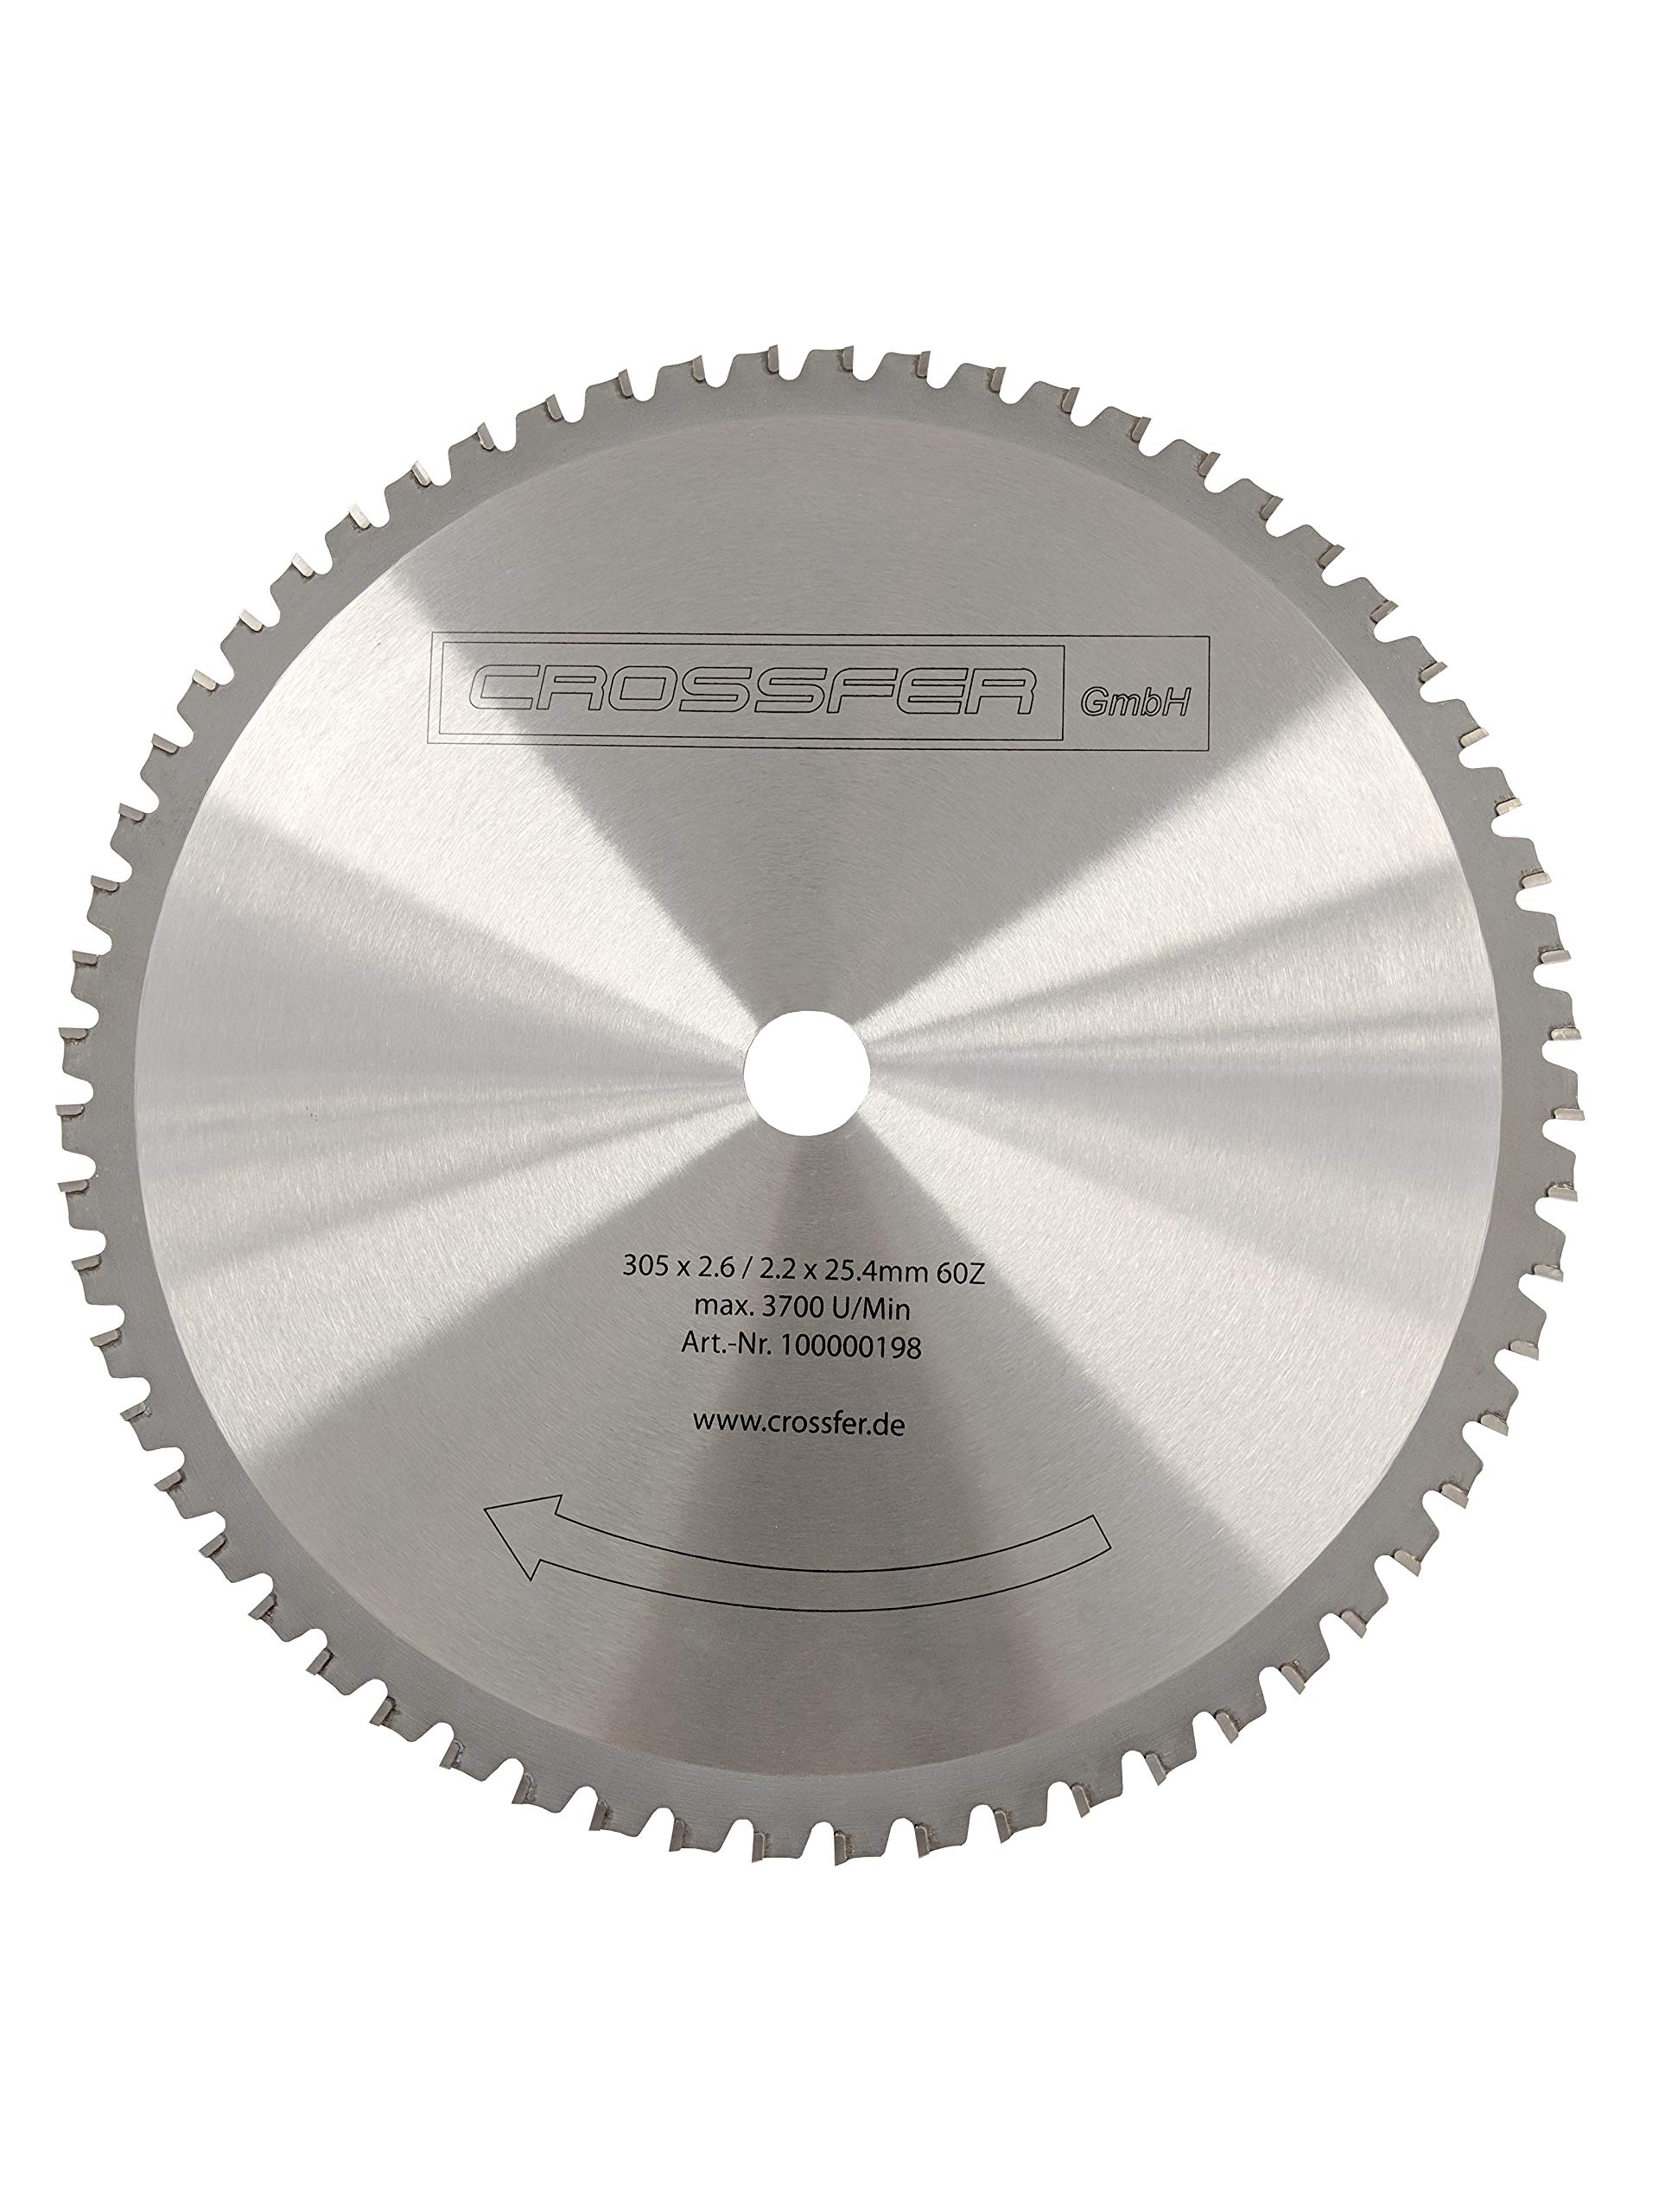 HM Kreissägeblatt 305 x 25,4 mm 60Z Universal für Metall und Kunststoff, hartmetallbestücktes Sägeblatt für viele unterschiedliche Anwendungen